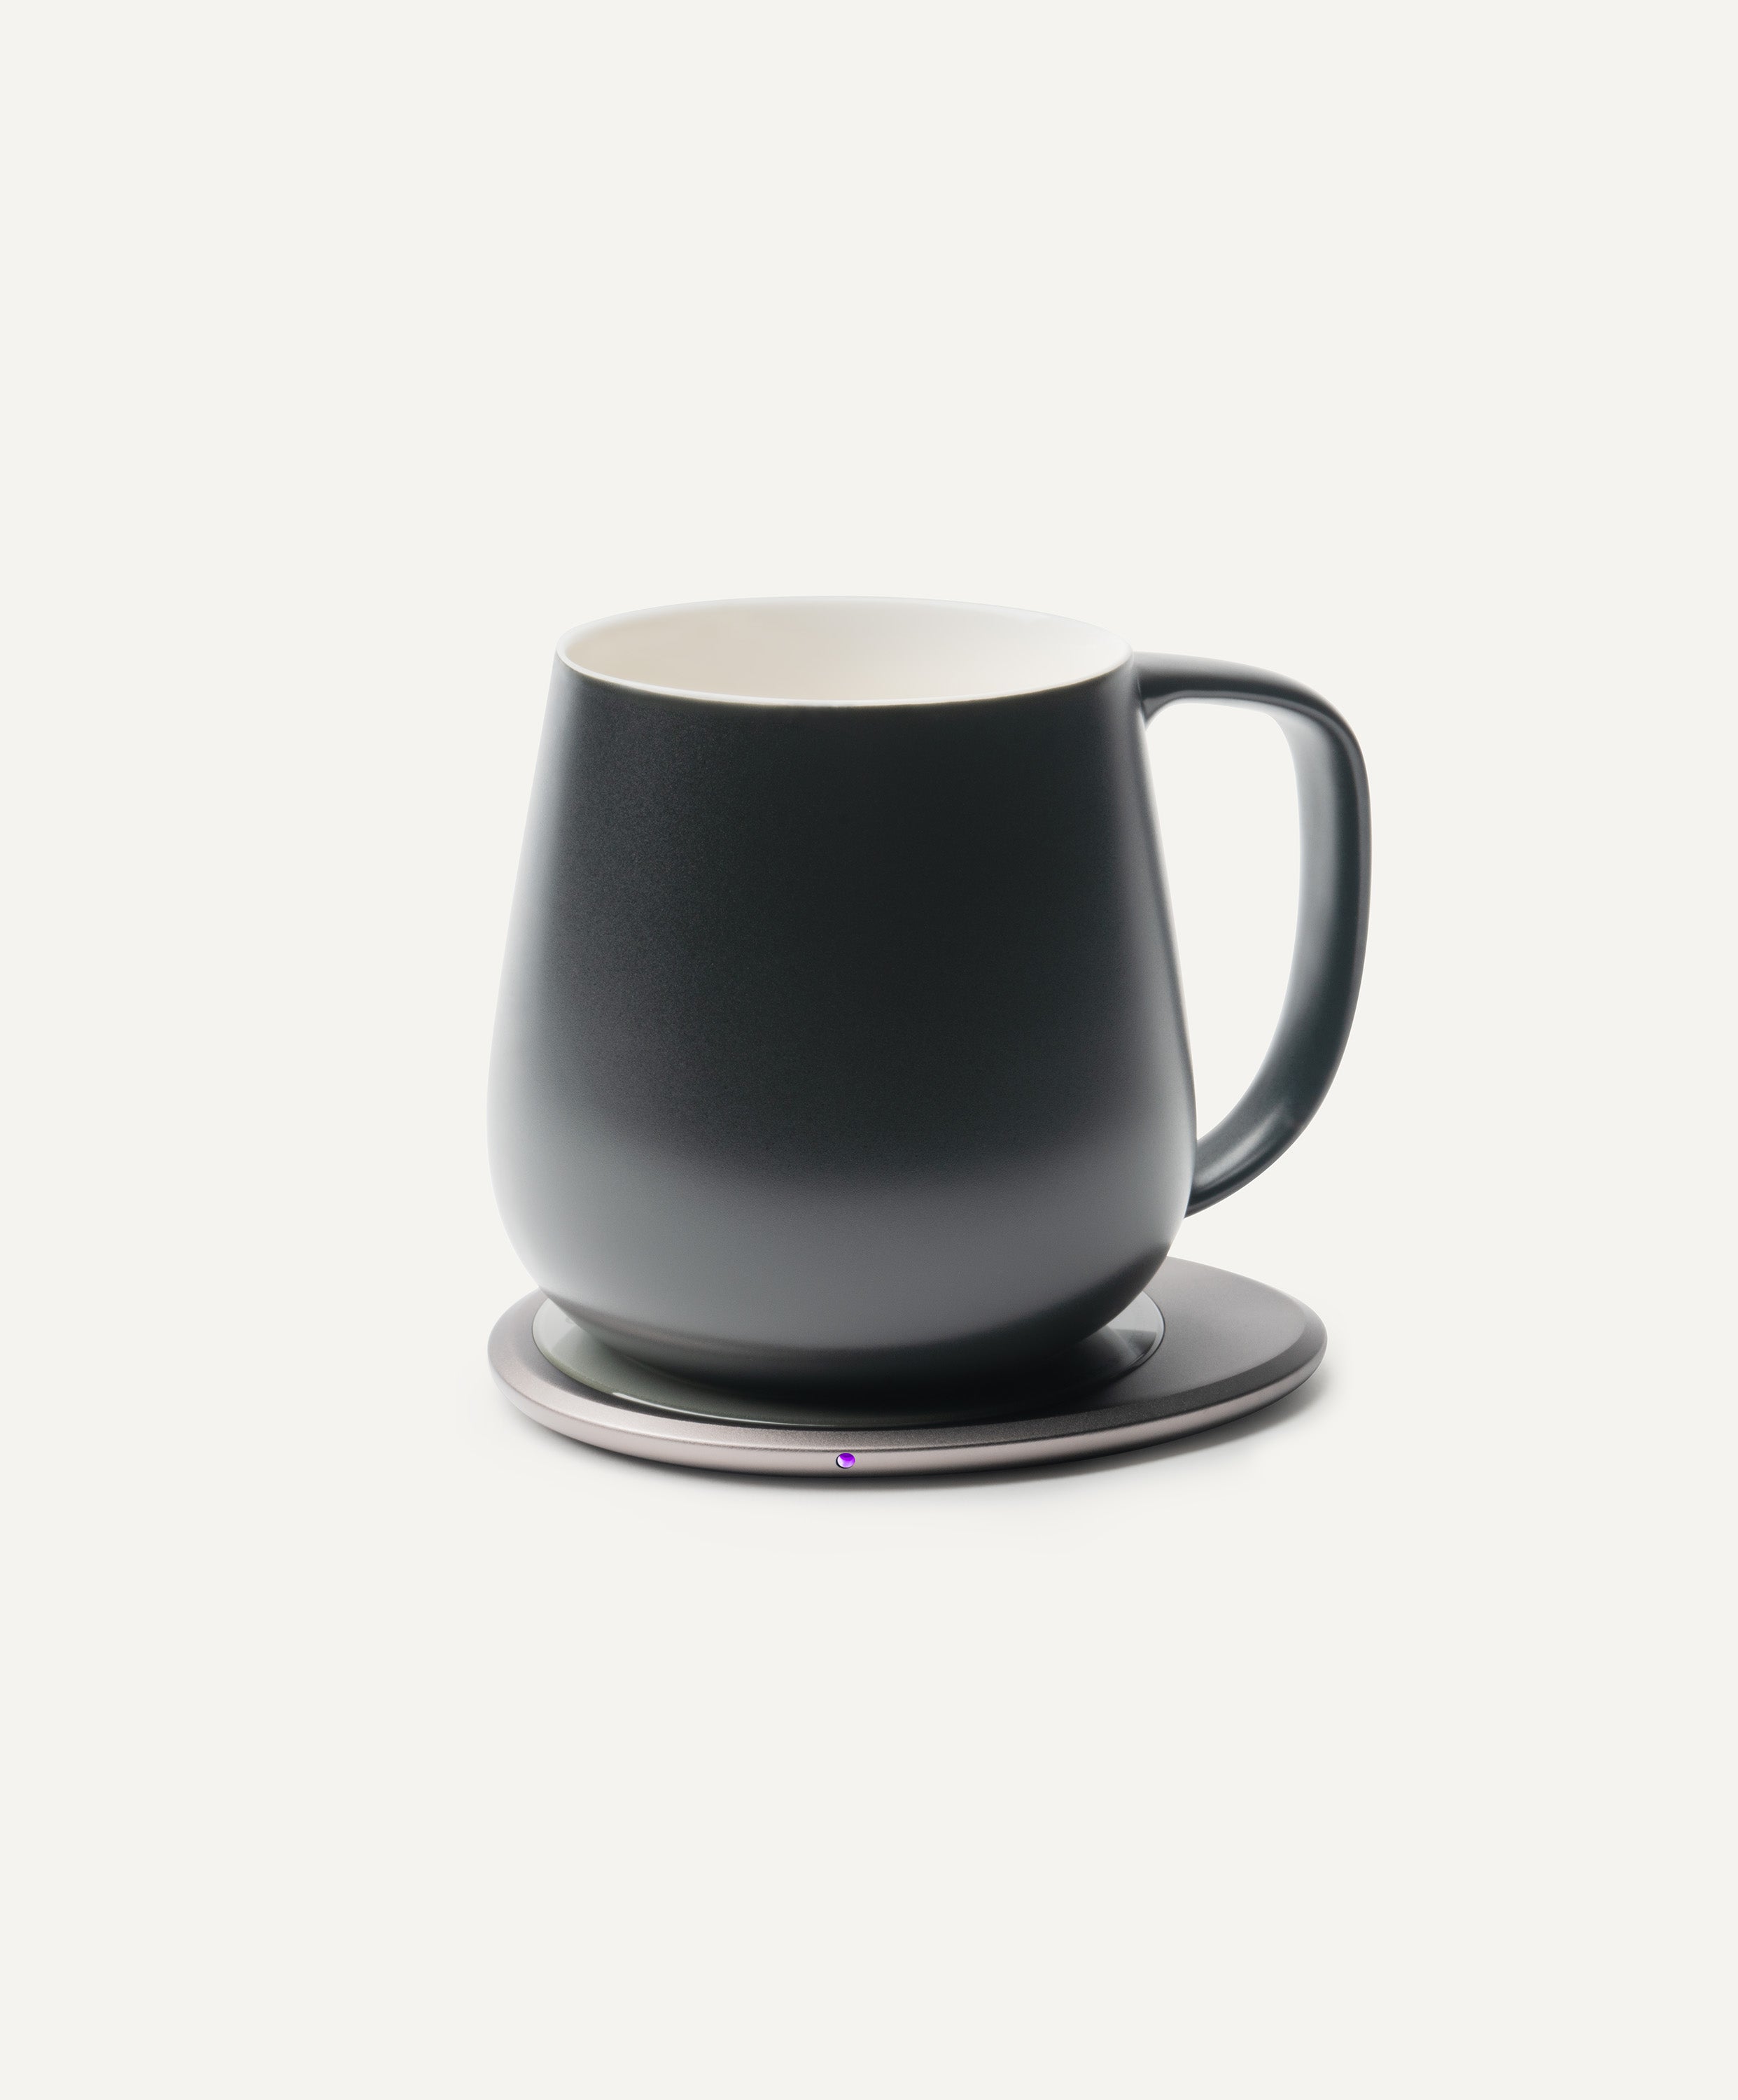 Ui+ Self-heating Mug Set - Inkstone Black